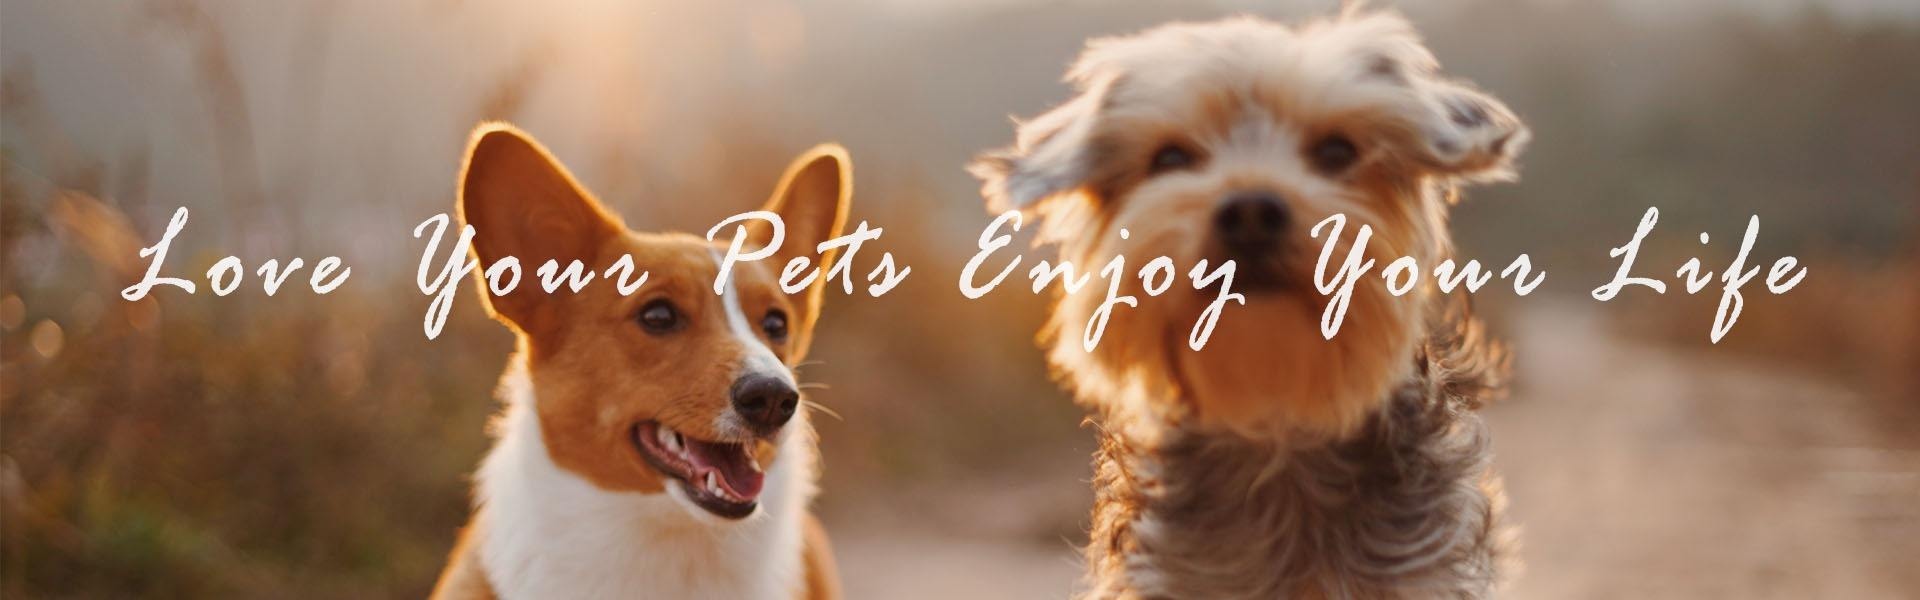 ペット製品、ペットアクセサリー、ペット用品,Furjoyz Pet Products Co., Ltd